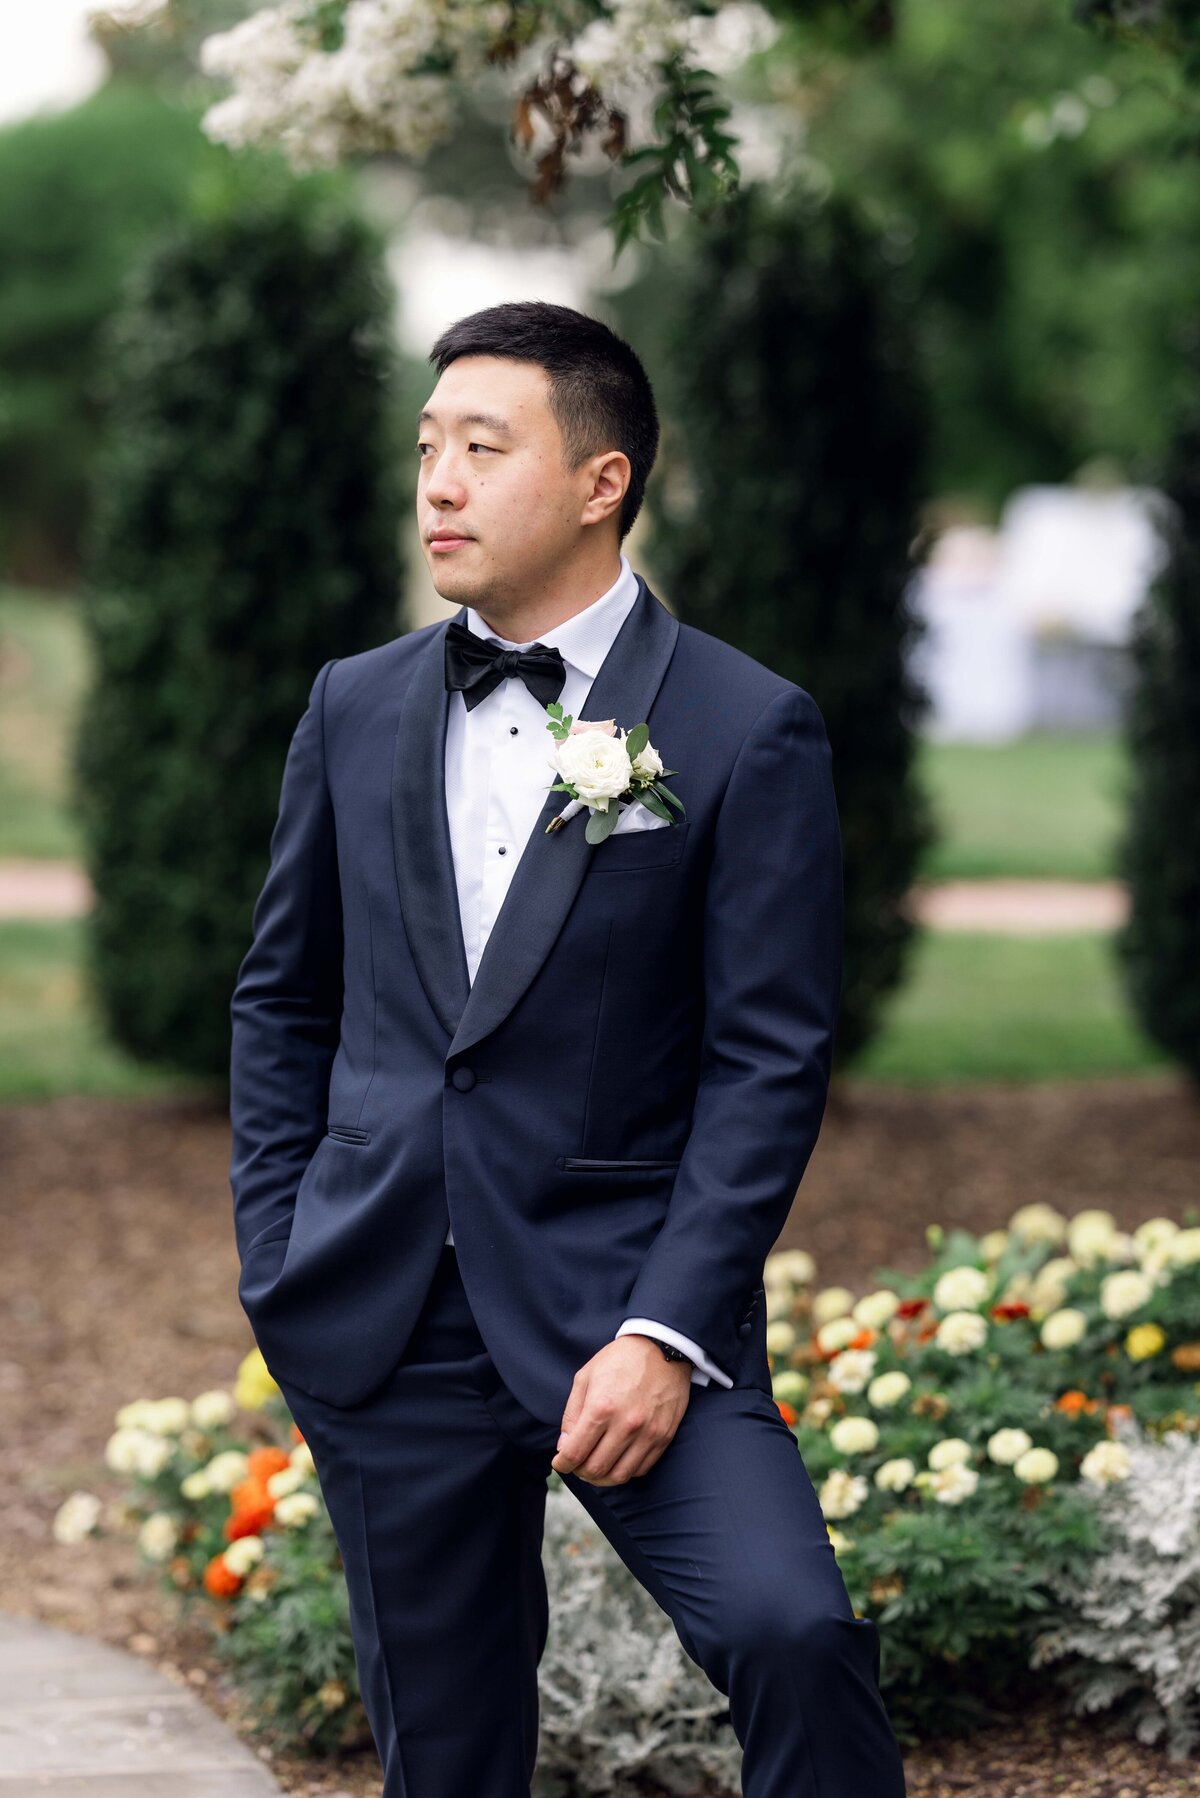 belmont-manor-wedding-baltimore-wedding-photographer-bailey-weddings-asian-american-wedding-karenadixon-2022-202